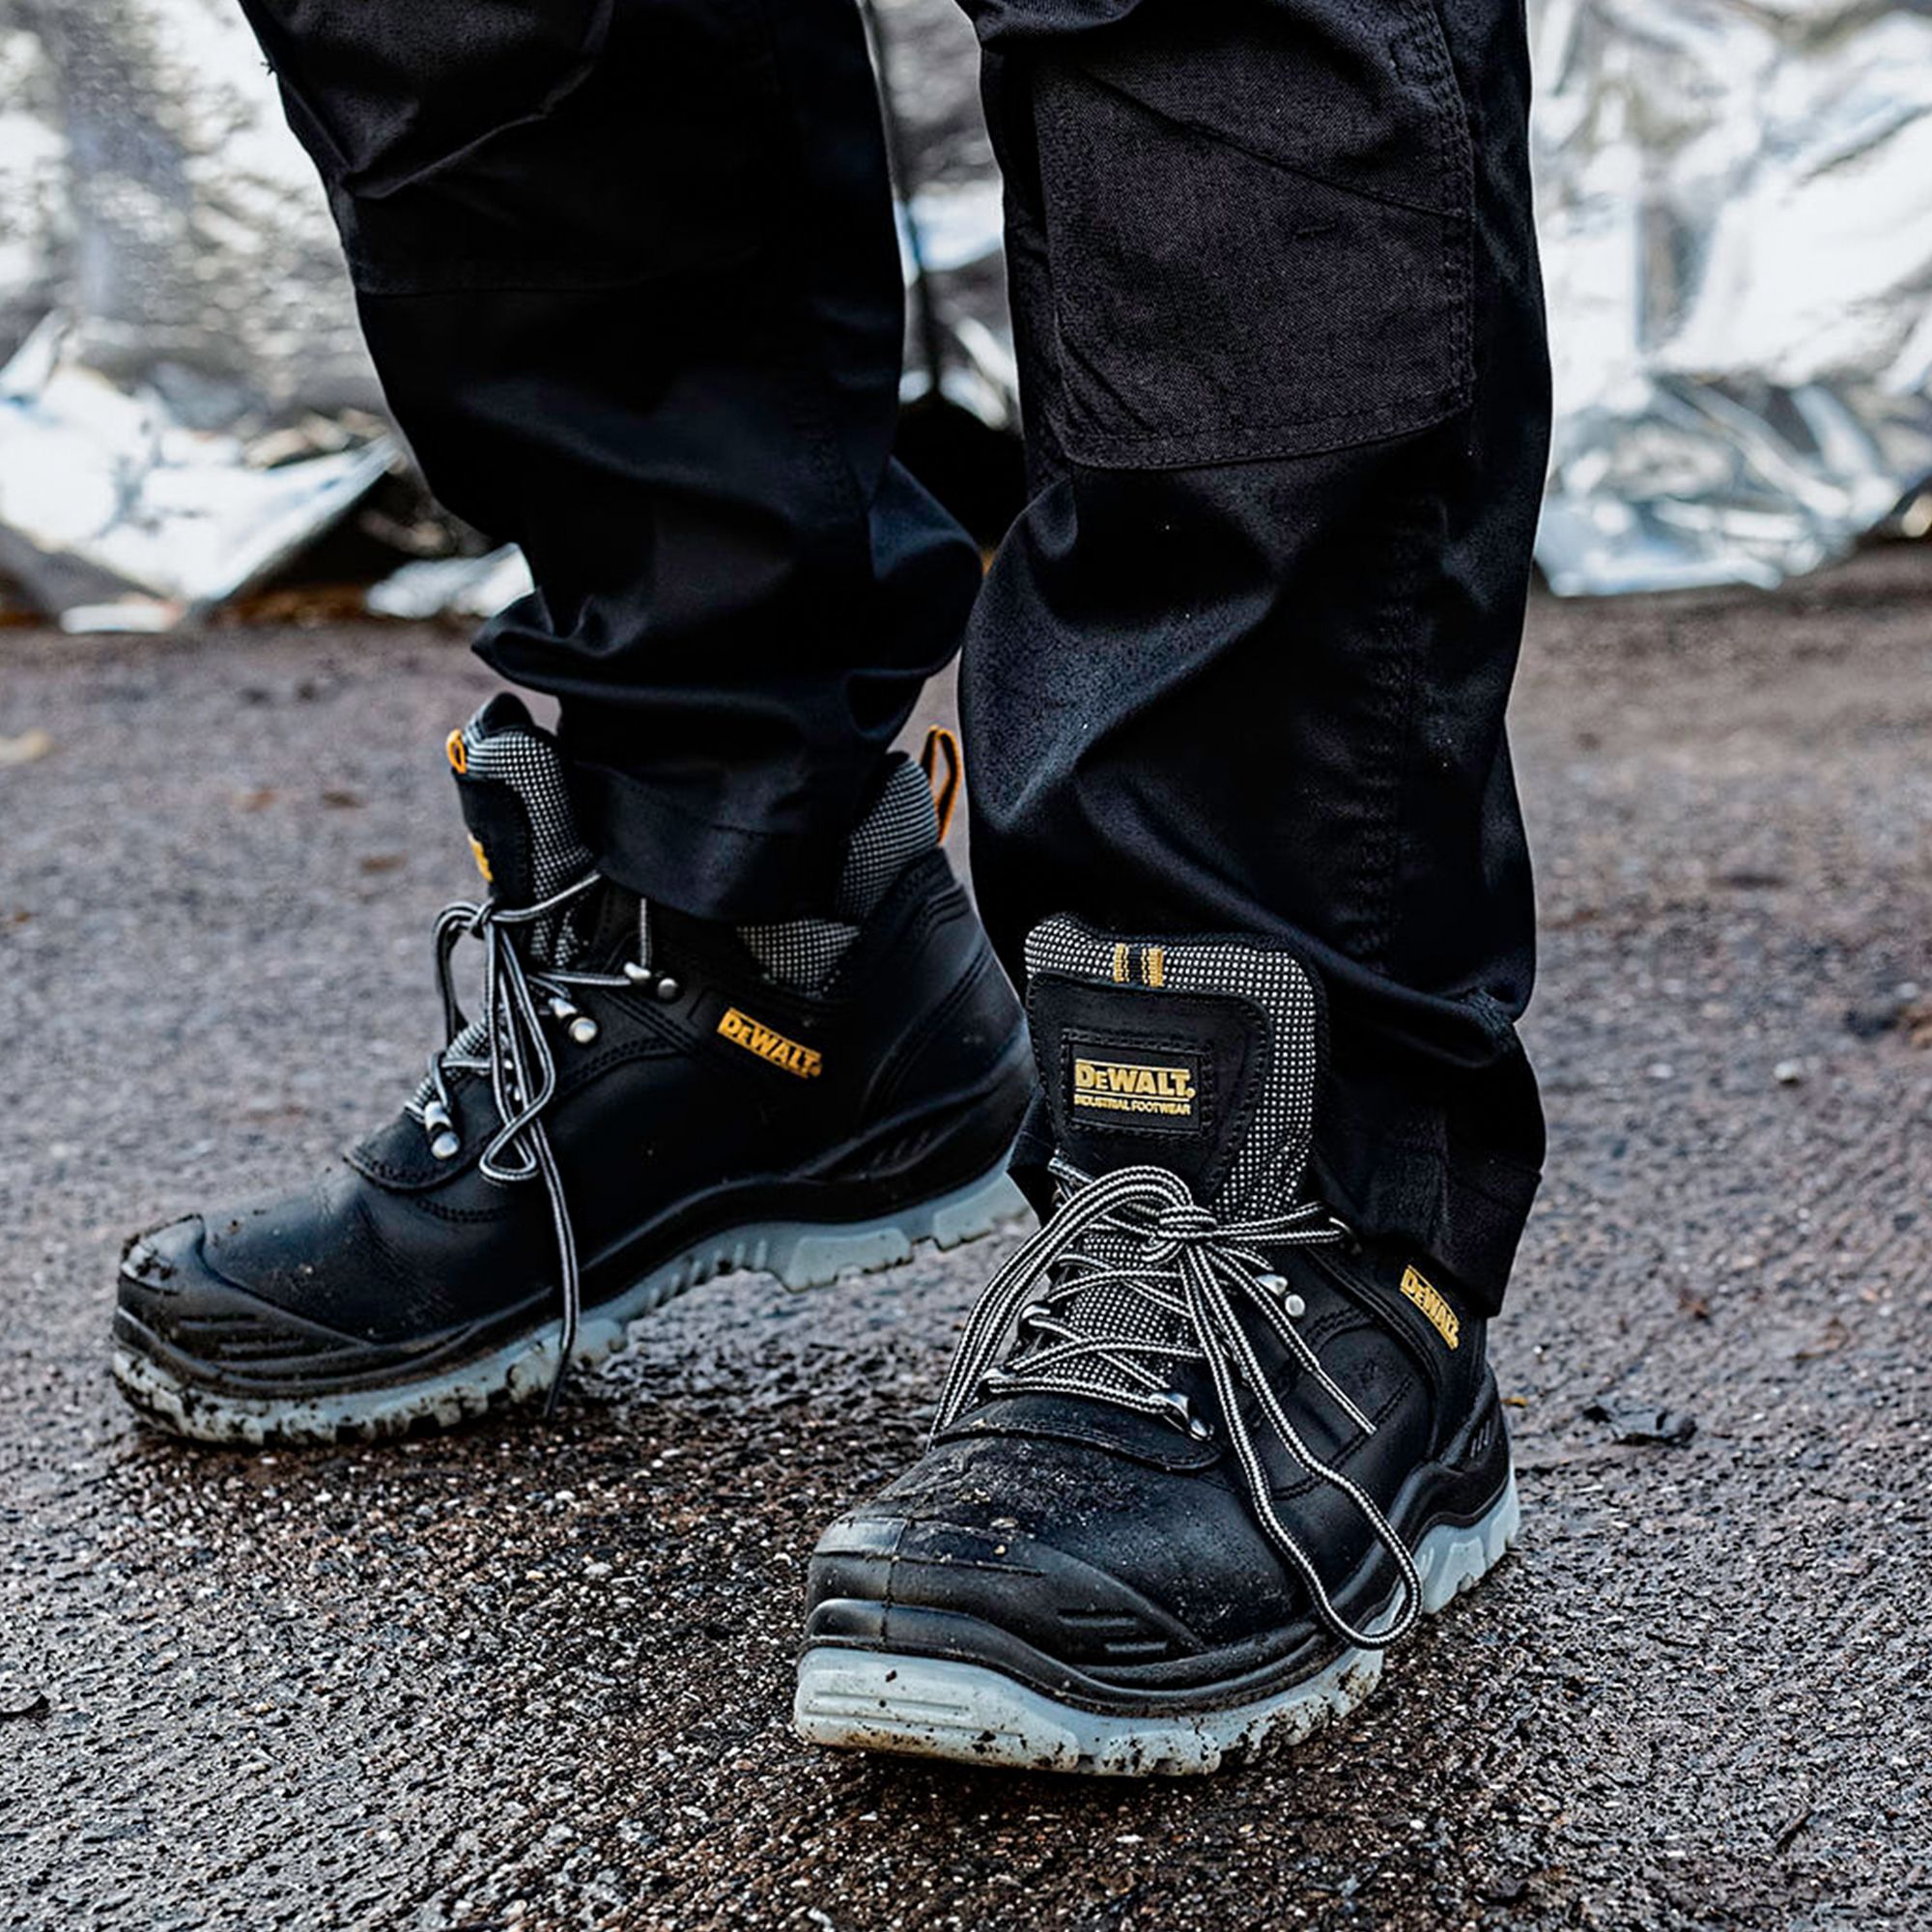 DeWalt Laser Men's Black Safety boots, Size 11